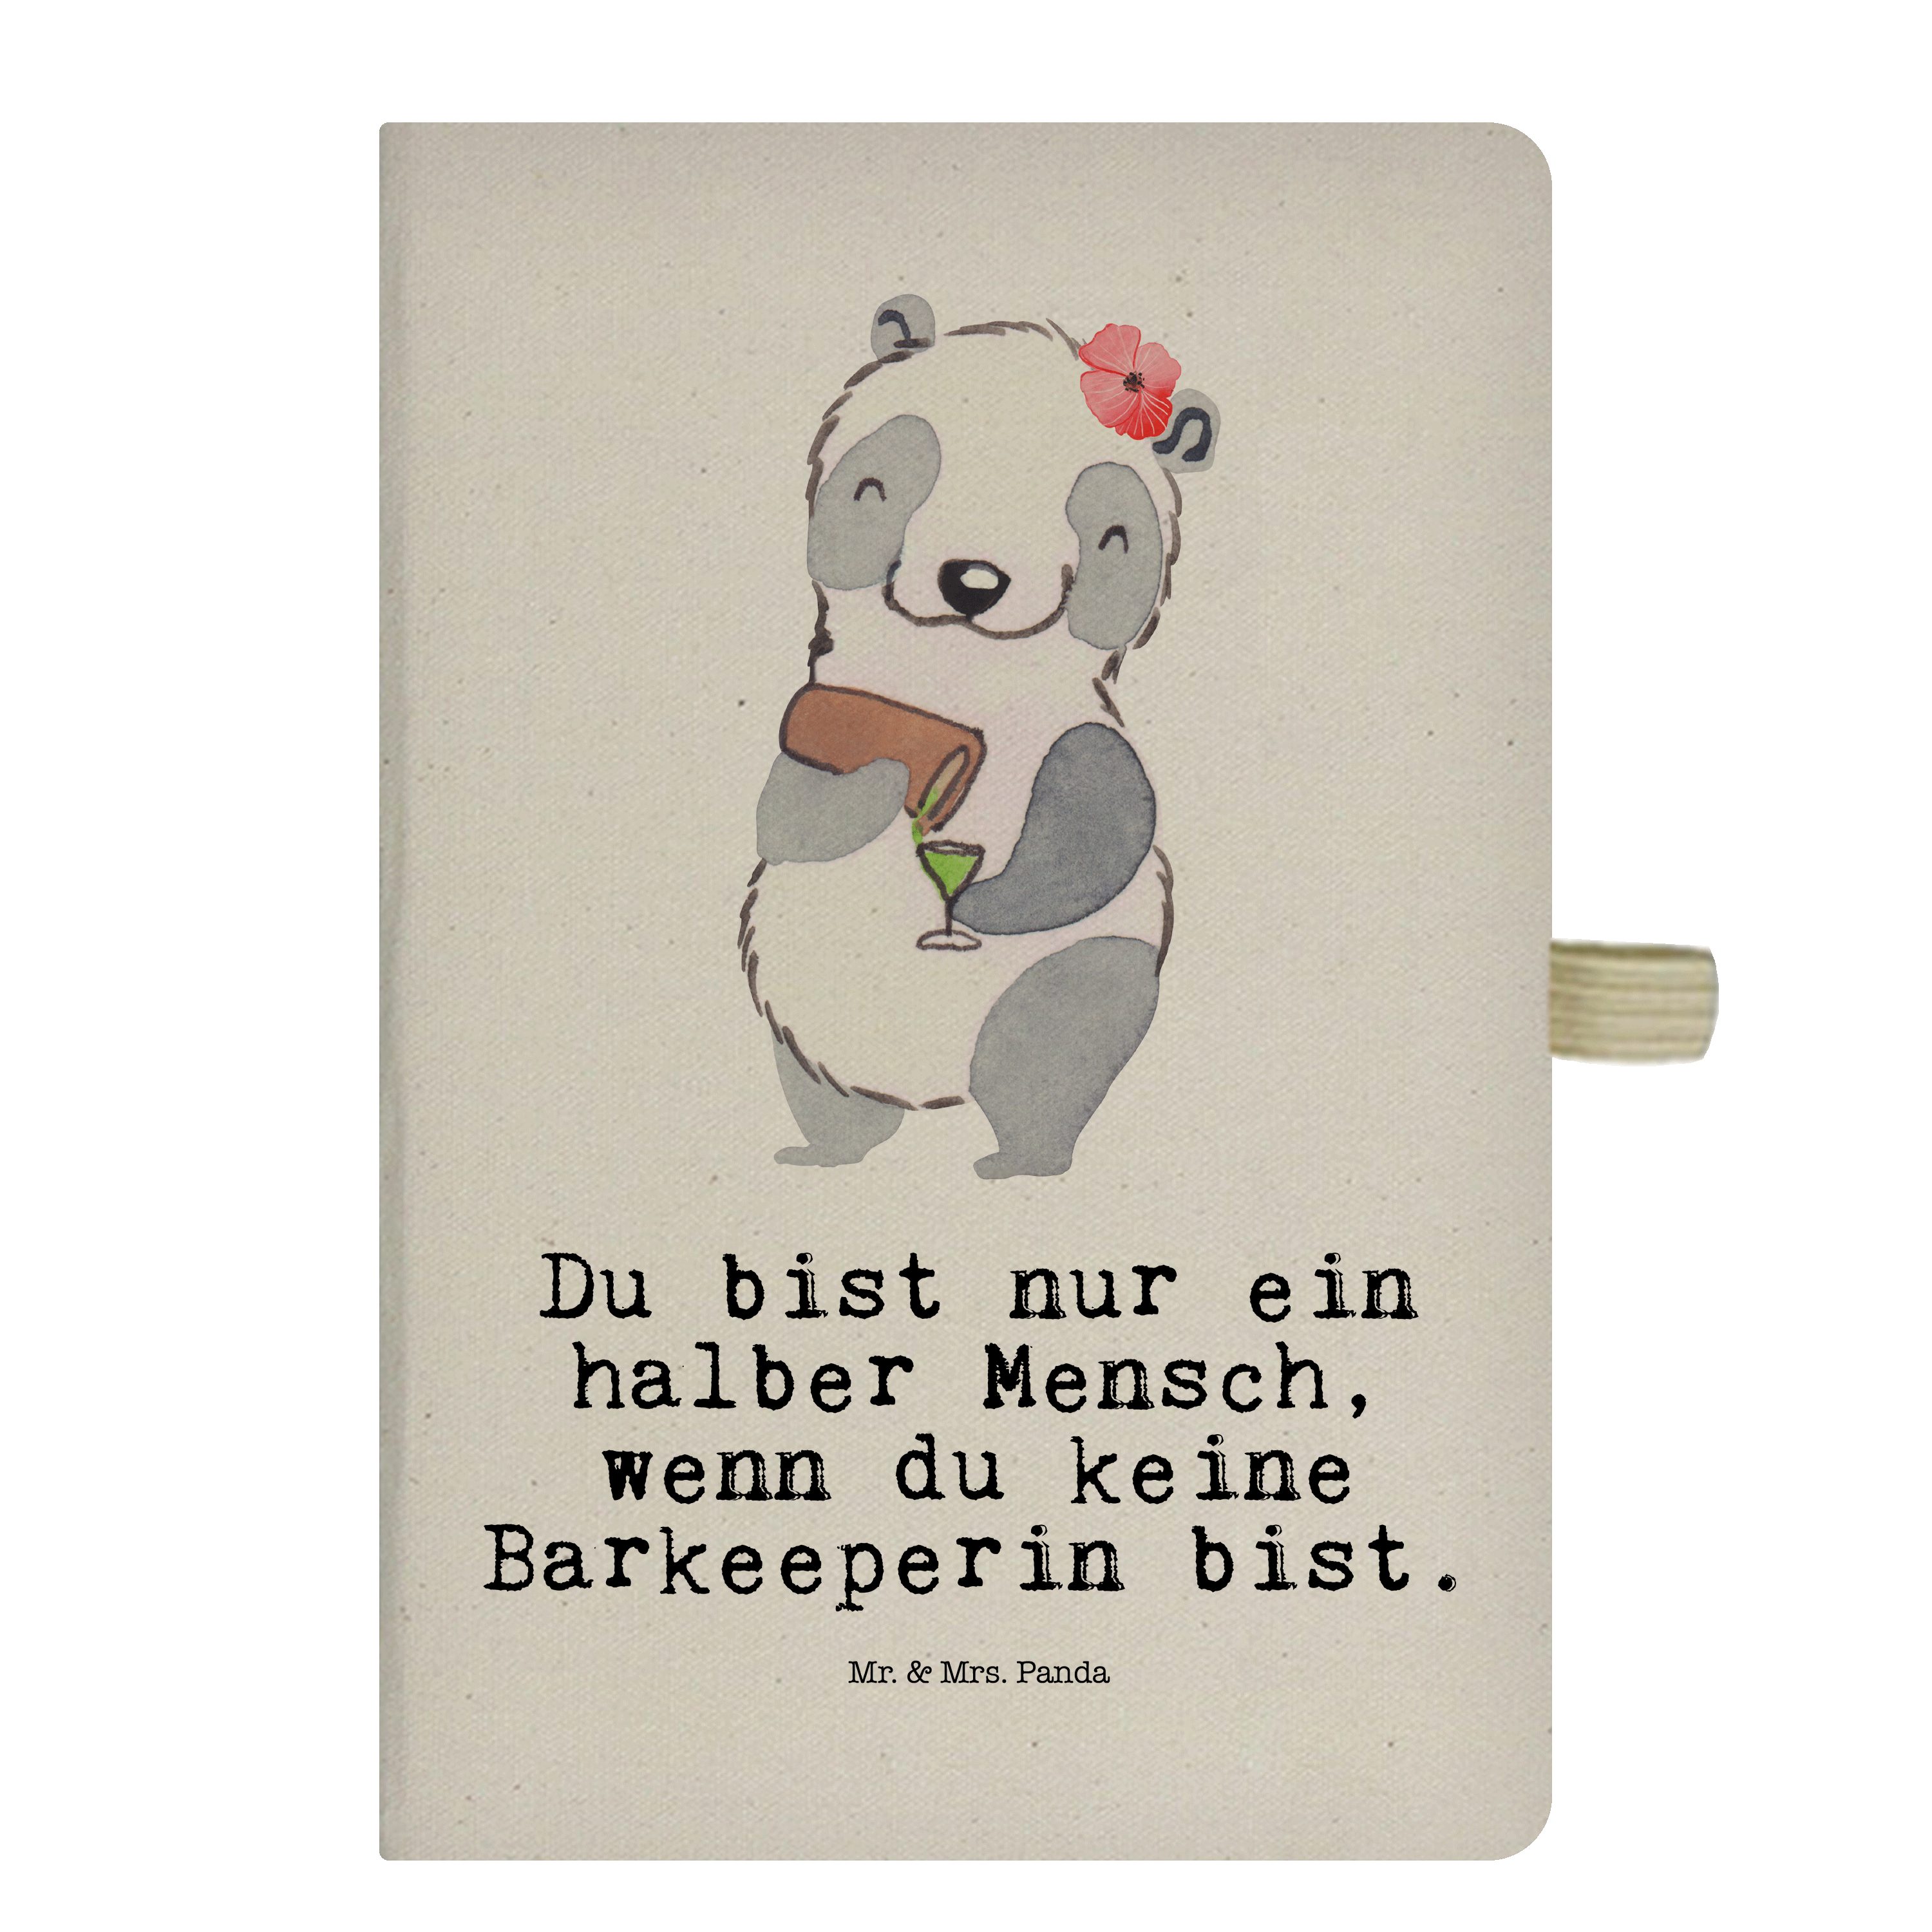 Mr. & Mrs. Panda Notizbuch Barkeeperin mit Herz - Transparent - Geschenk, Ausbildung, Notizen, S Mr. & Mrs. Panda